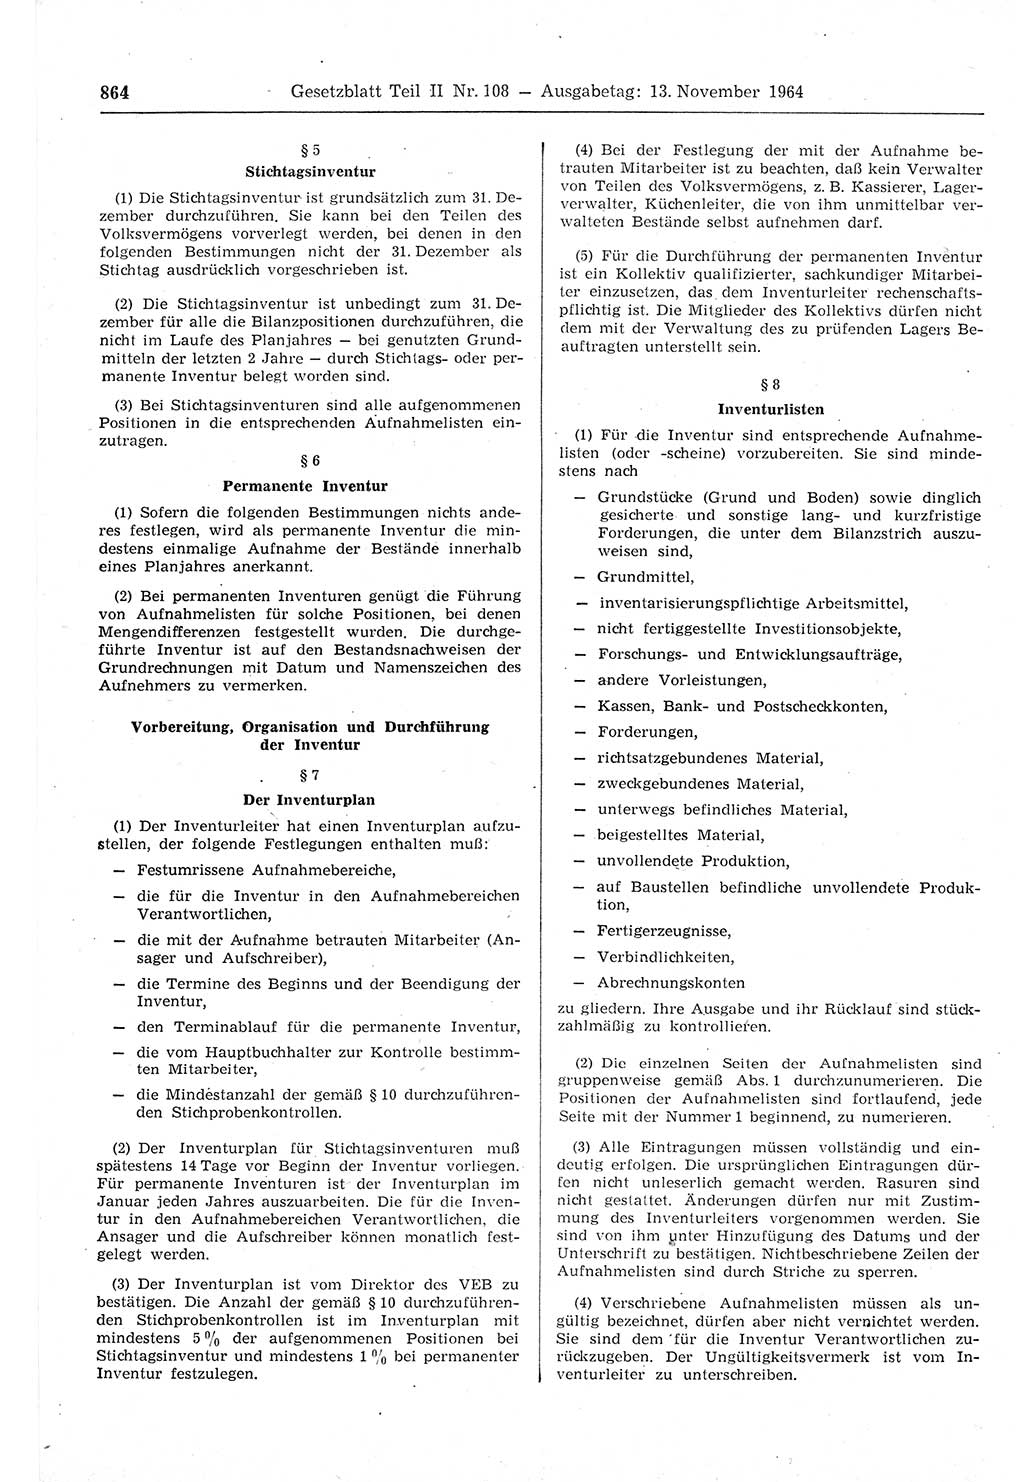 Gesetzblatt (GBl.) der Deutschen Demokratischen Republik (DDR) Teil ⅠⅠ 1964, Seite 864 (GBl. DDR ⅠⅠ 1964, S. 864)